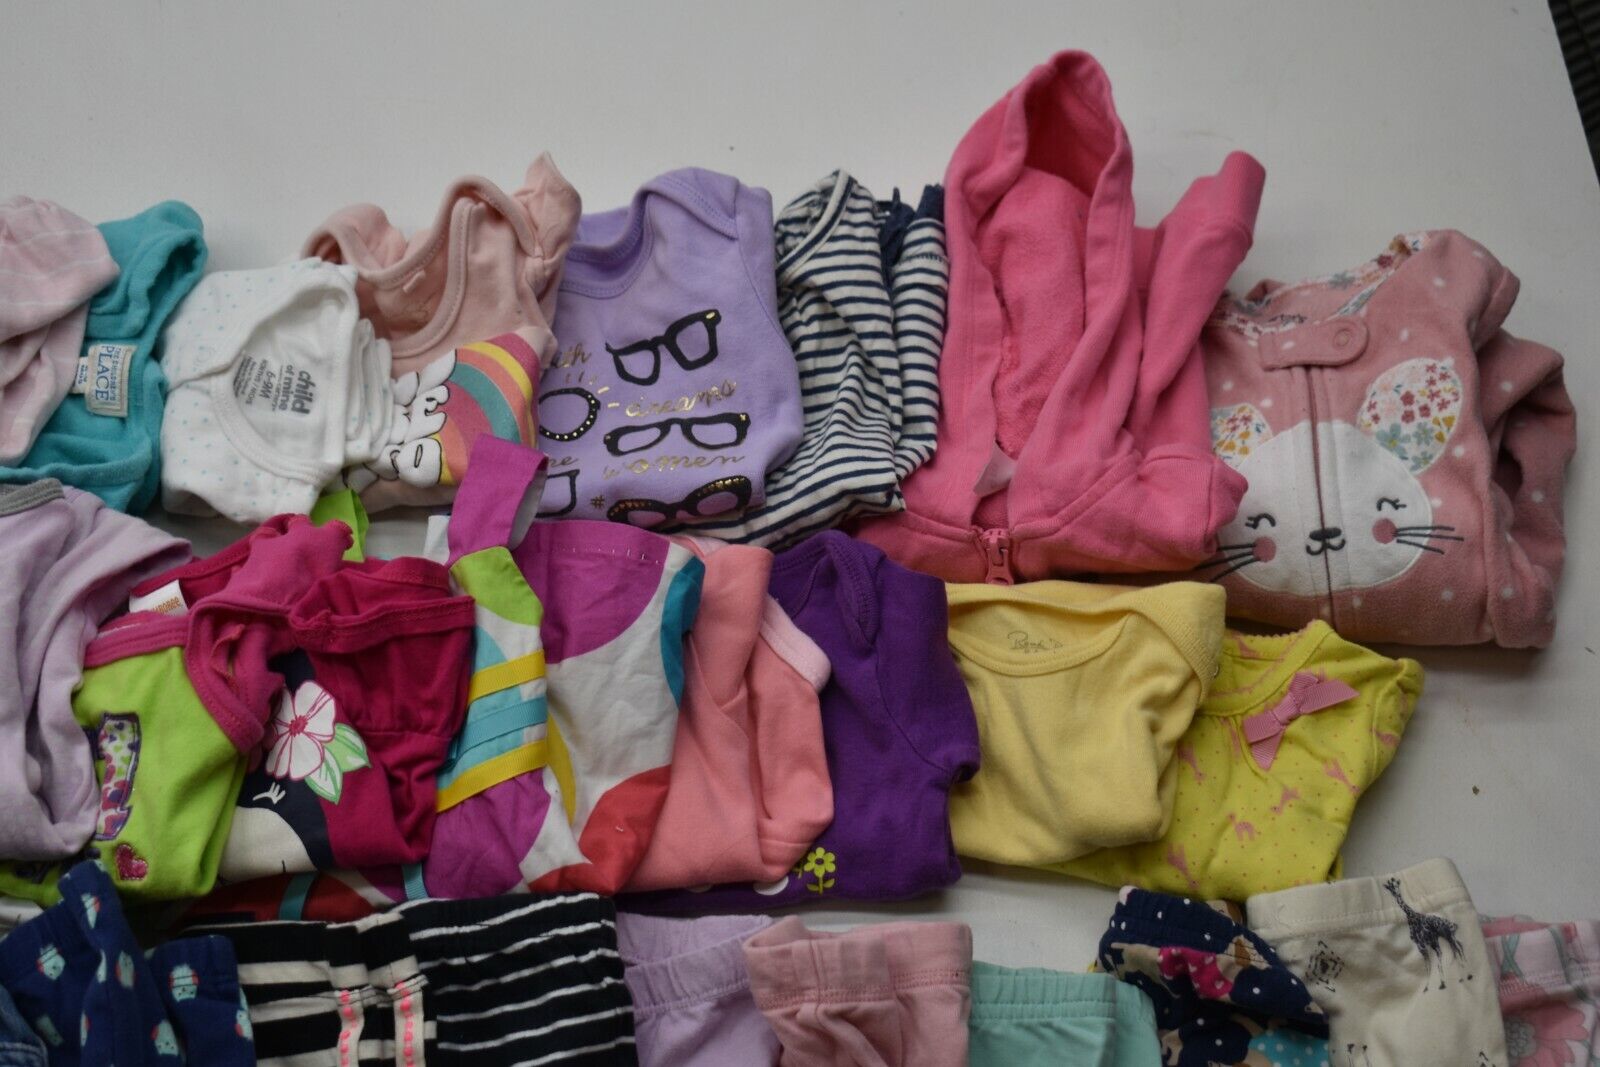 Wholesale Bulk Lot of 35 Girls Size 6-12 Mixed Season Pants Shirts Bottoms Mixed Brand - фотография #3